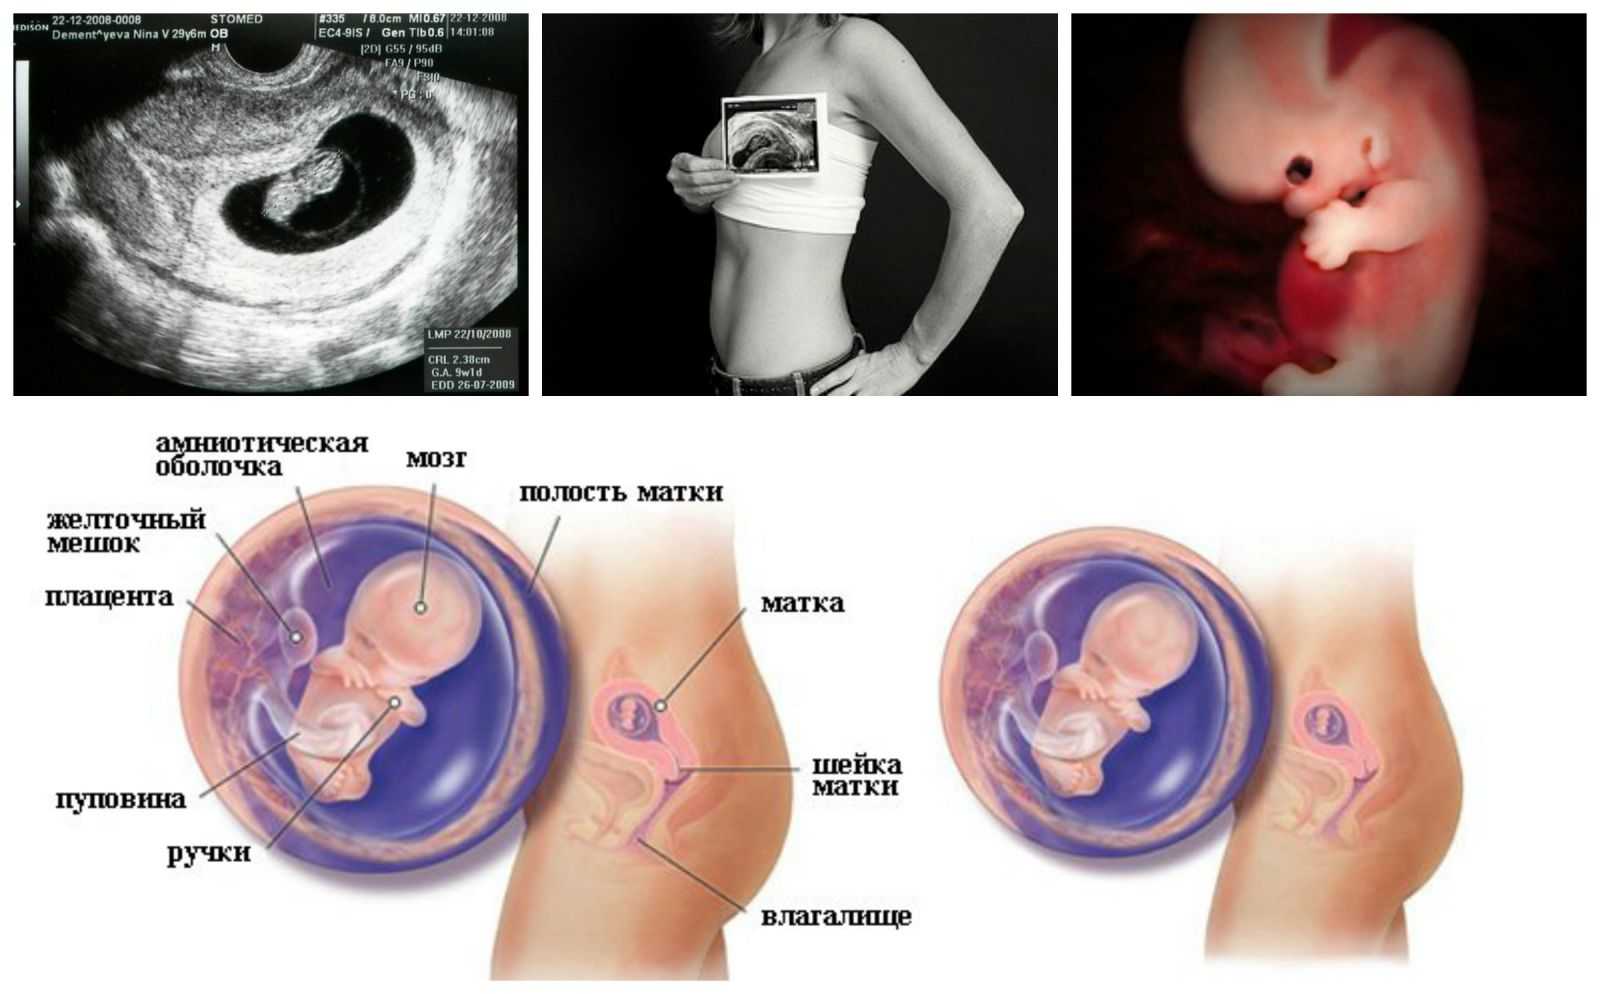 Рациональное питание беременных женщин. что нужно знать при планировании рациона питания во время беременности.